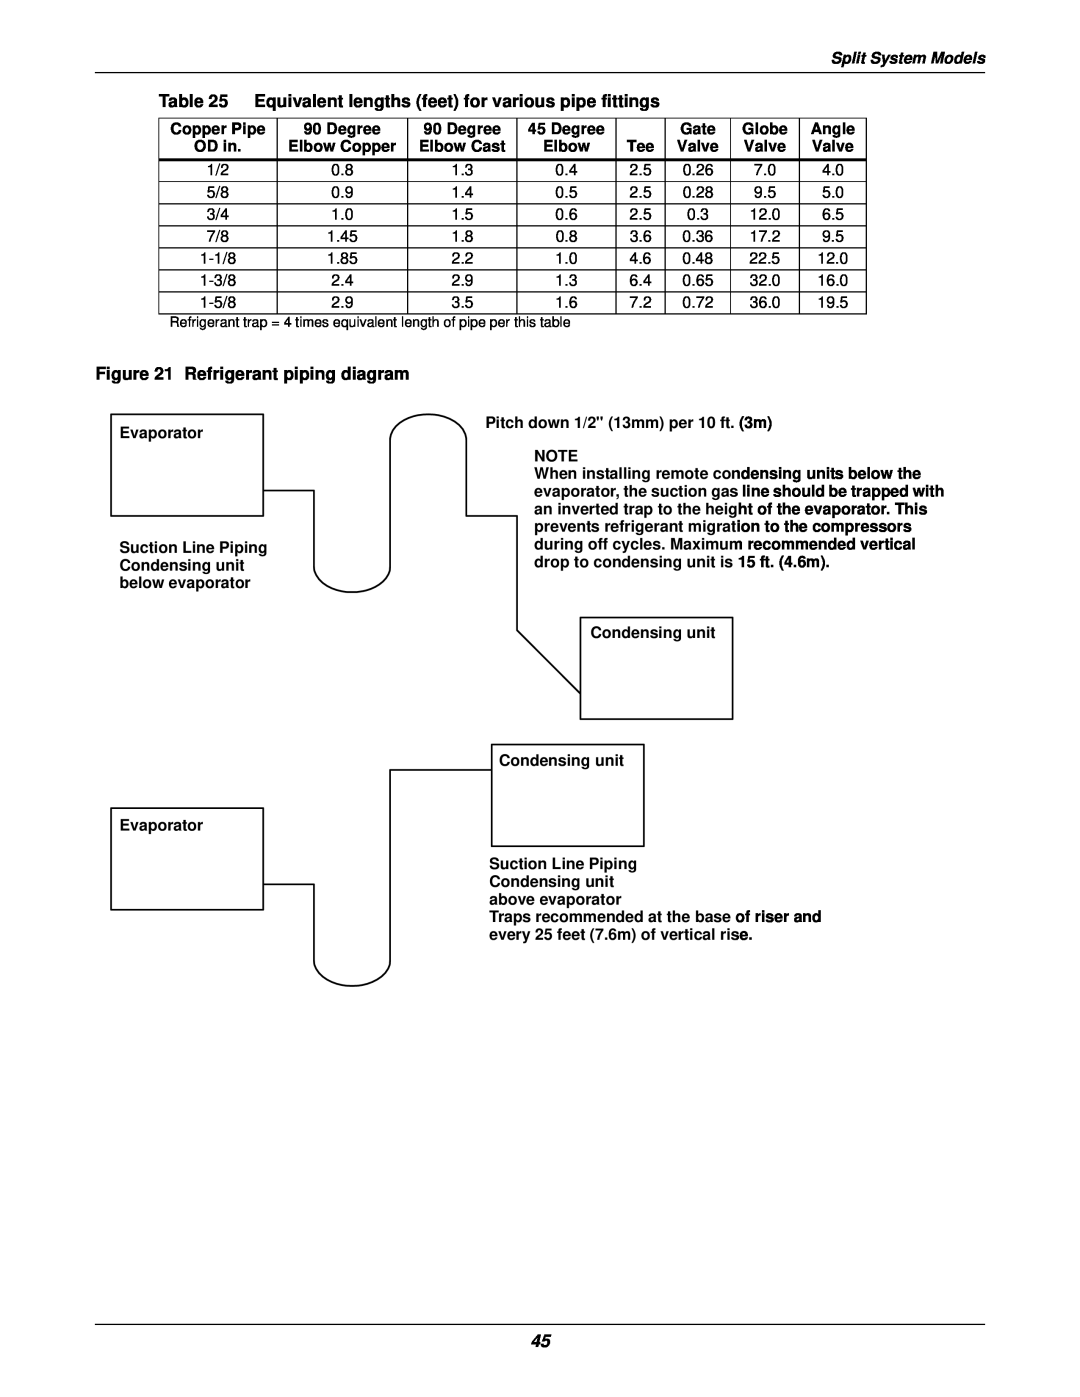 Liebert 3000 installation manual Refrigerant piping diagram, Split System Models 